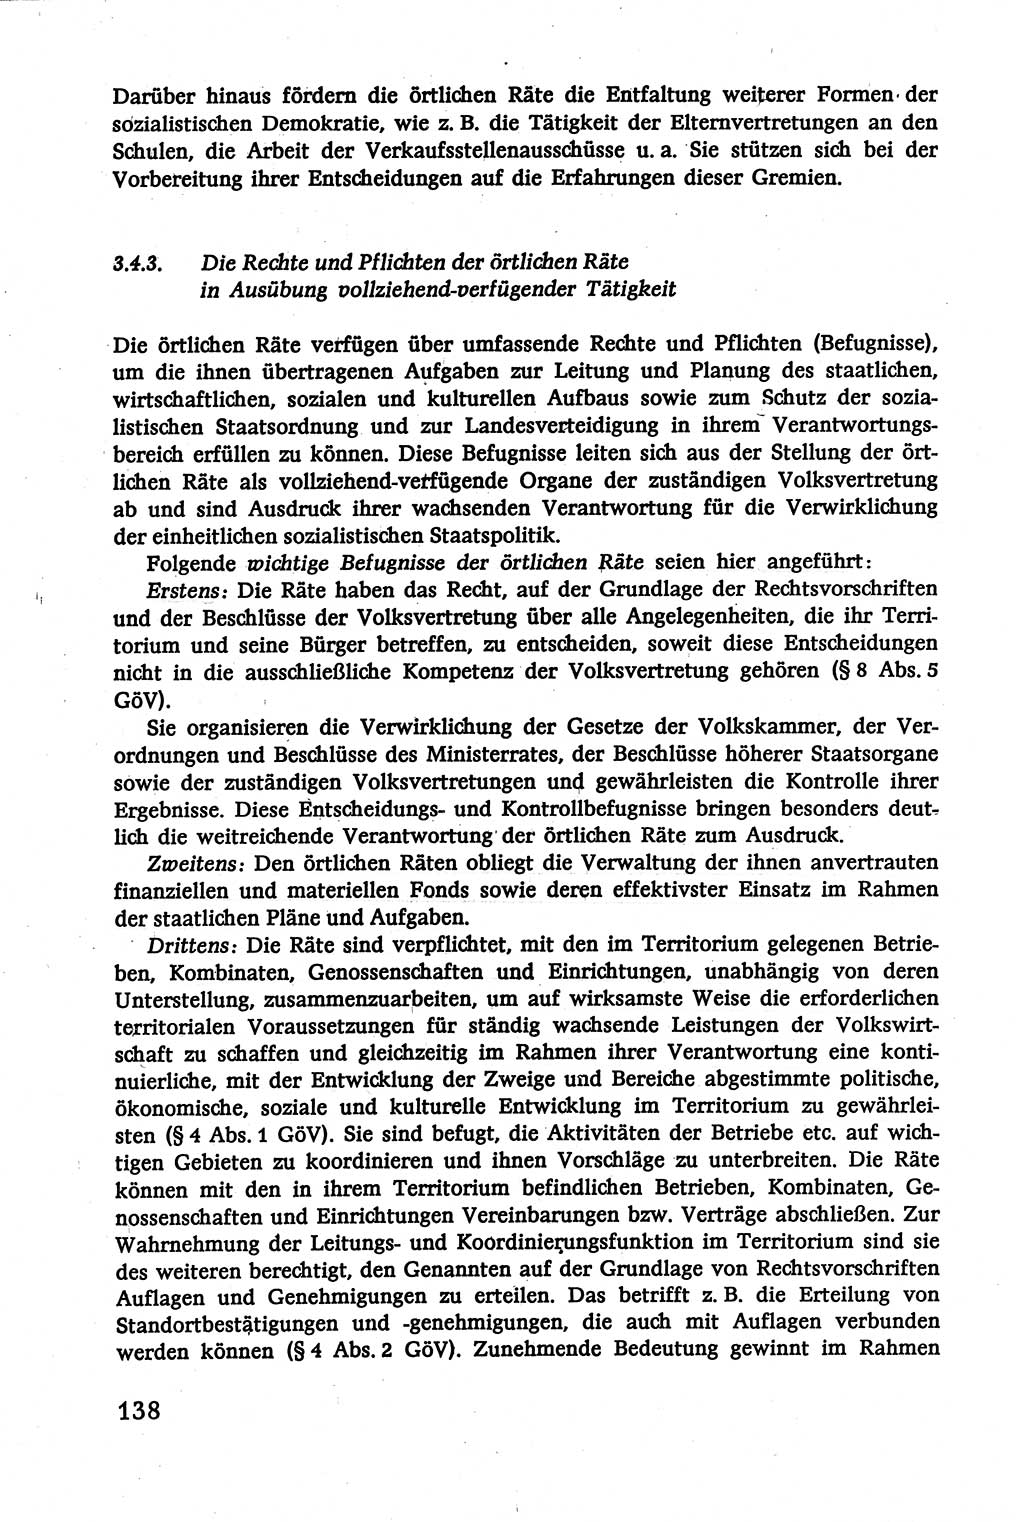 Verwaltungsrecht [Deutsche Demokratische Republik (DDR)], Lehrbuch 1979, Seite 138 (Verw.-R. DDR Lb. 1979, S. 138)